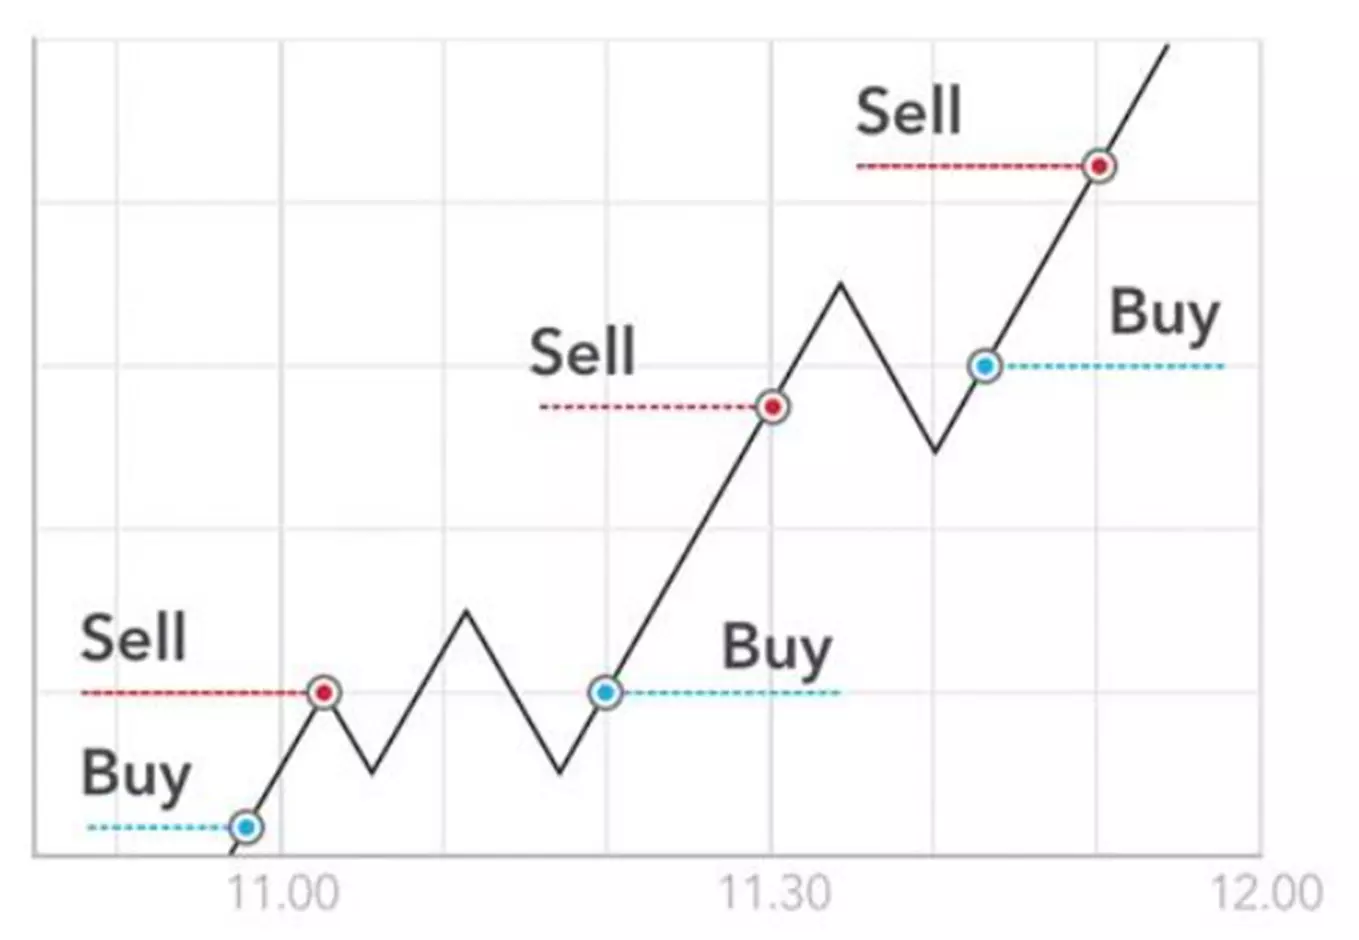 下圖顯示了超短線交易者如何在短時間內根據市場波動買入和賣出倉位。